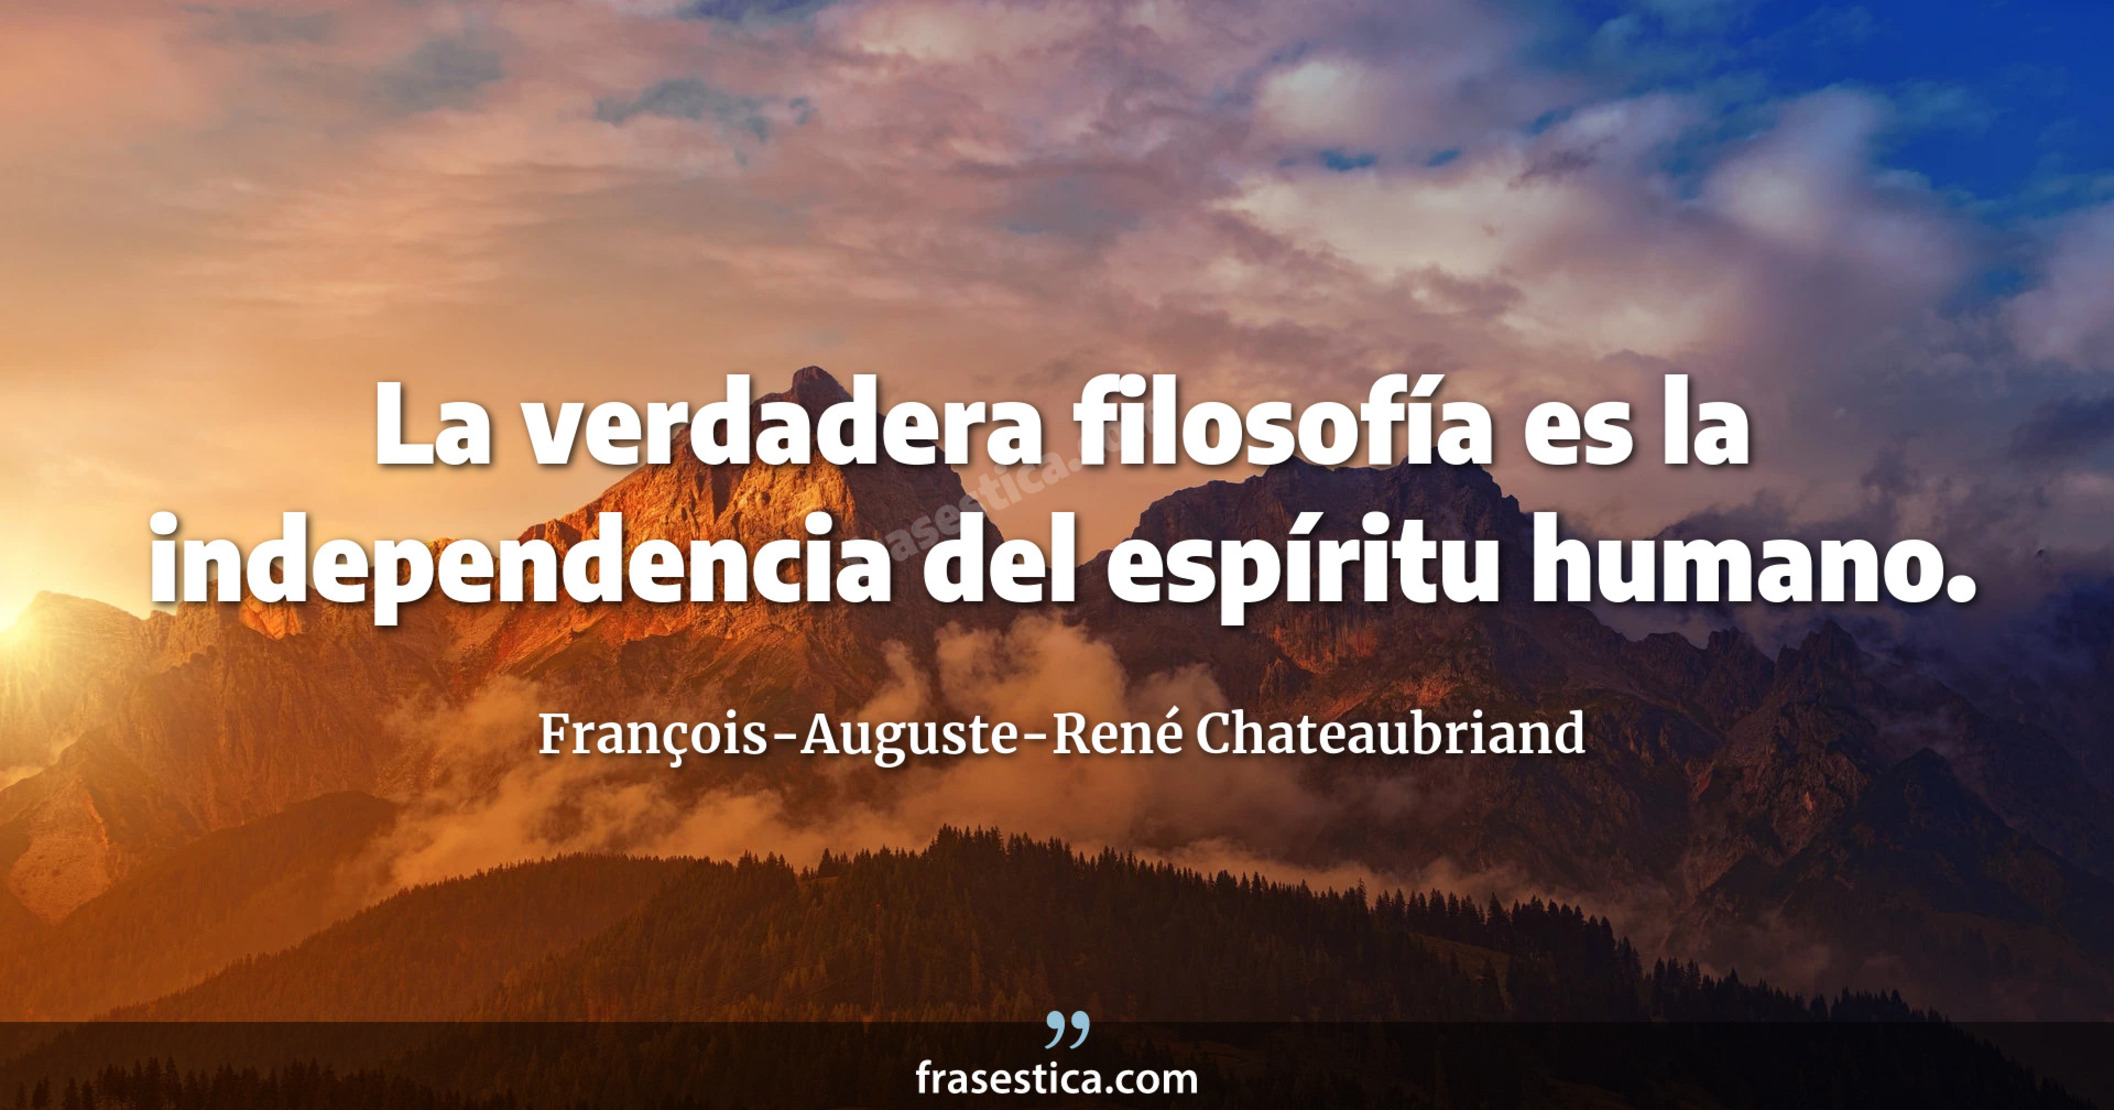 La verdadera filosofía es la independencia del espíritu humano. - François-Auguste-René Chateaubriand